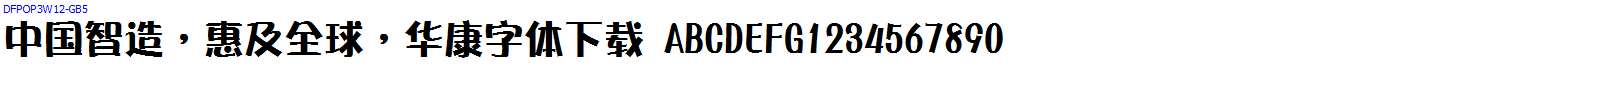 華康字體DFPOP3W12-GB5.ttc